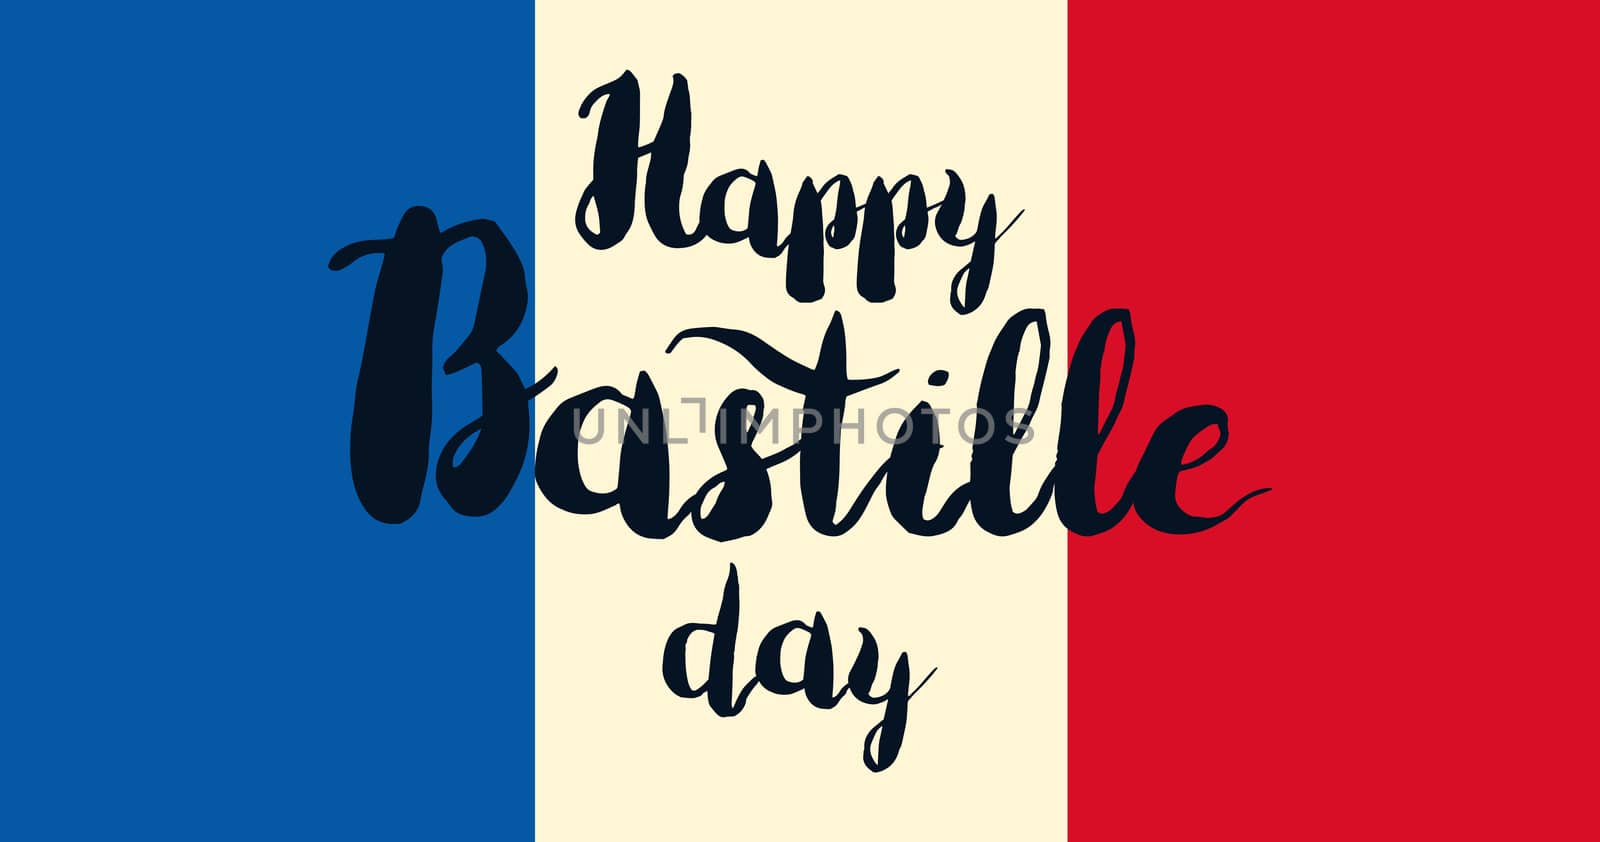 Happy Bastille Day Celebration Banner. France Independence Greeting. Vector